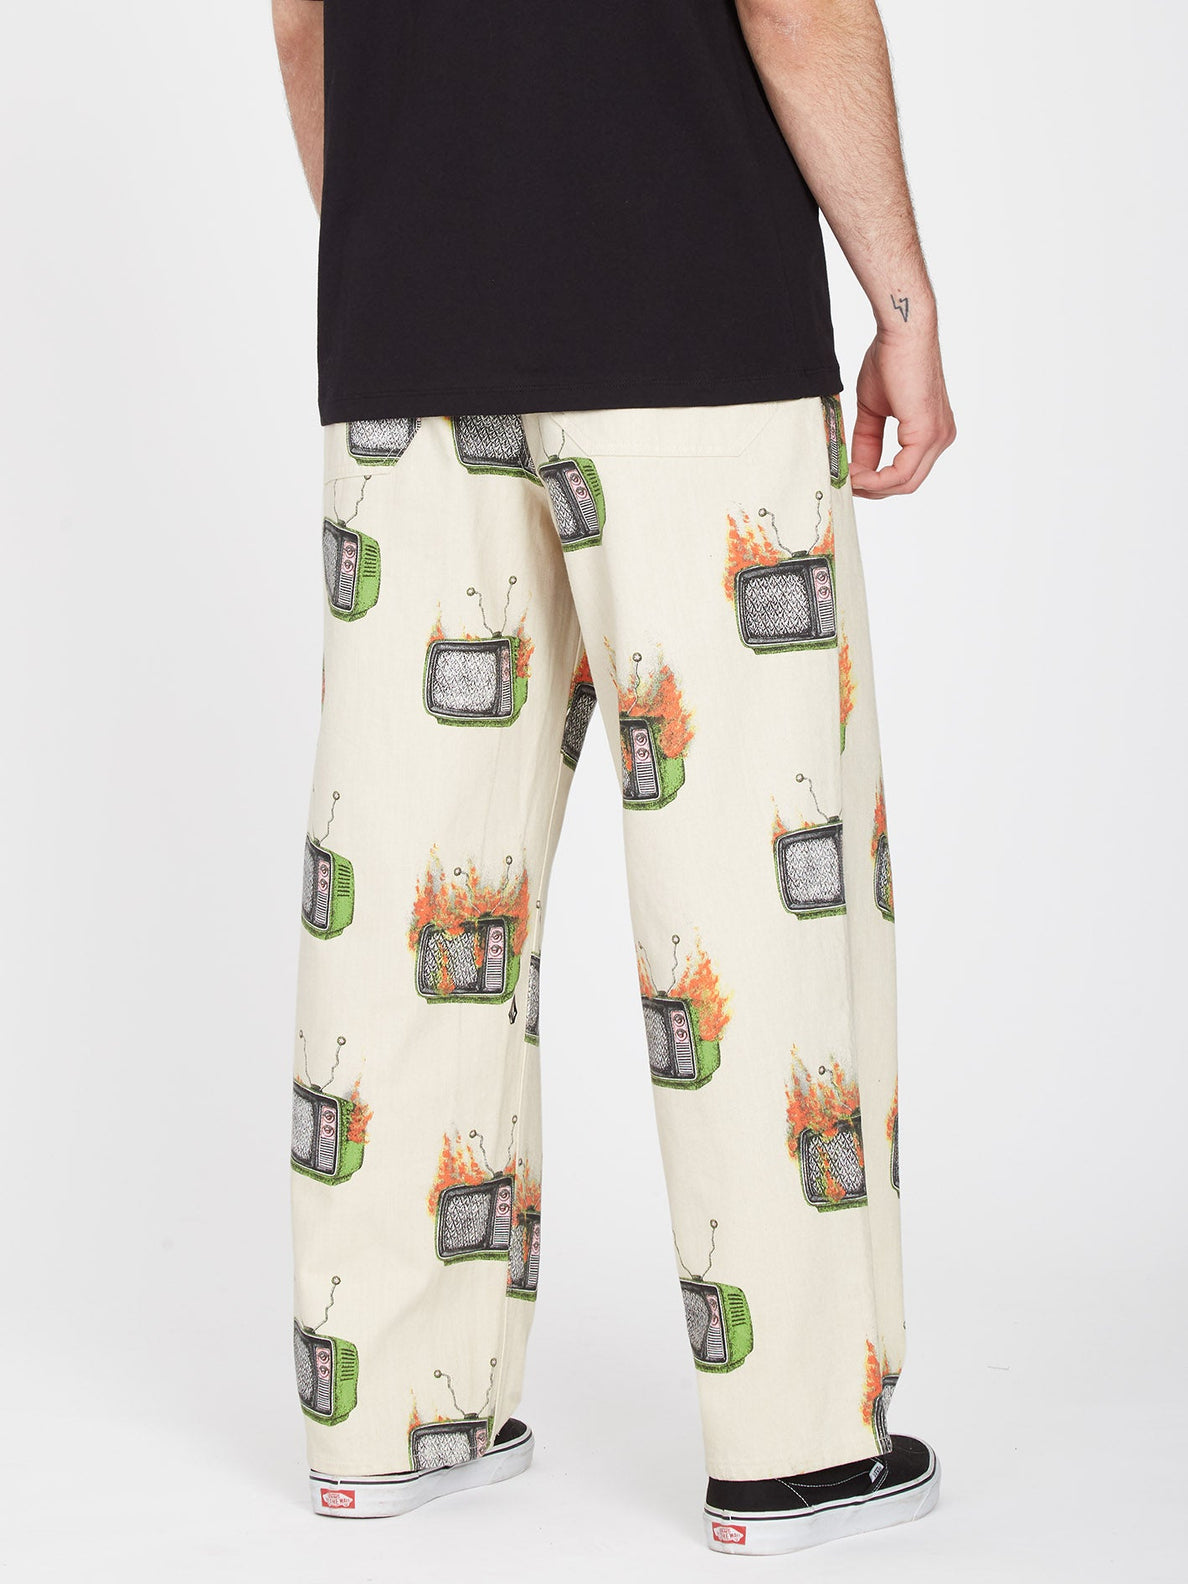 Pantalon taille élastique Volcom Justin Hager - Whitecap Grey | Nouveaux produits | Produits les plus récents | Produits les plus vendus | surfdevils.com